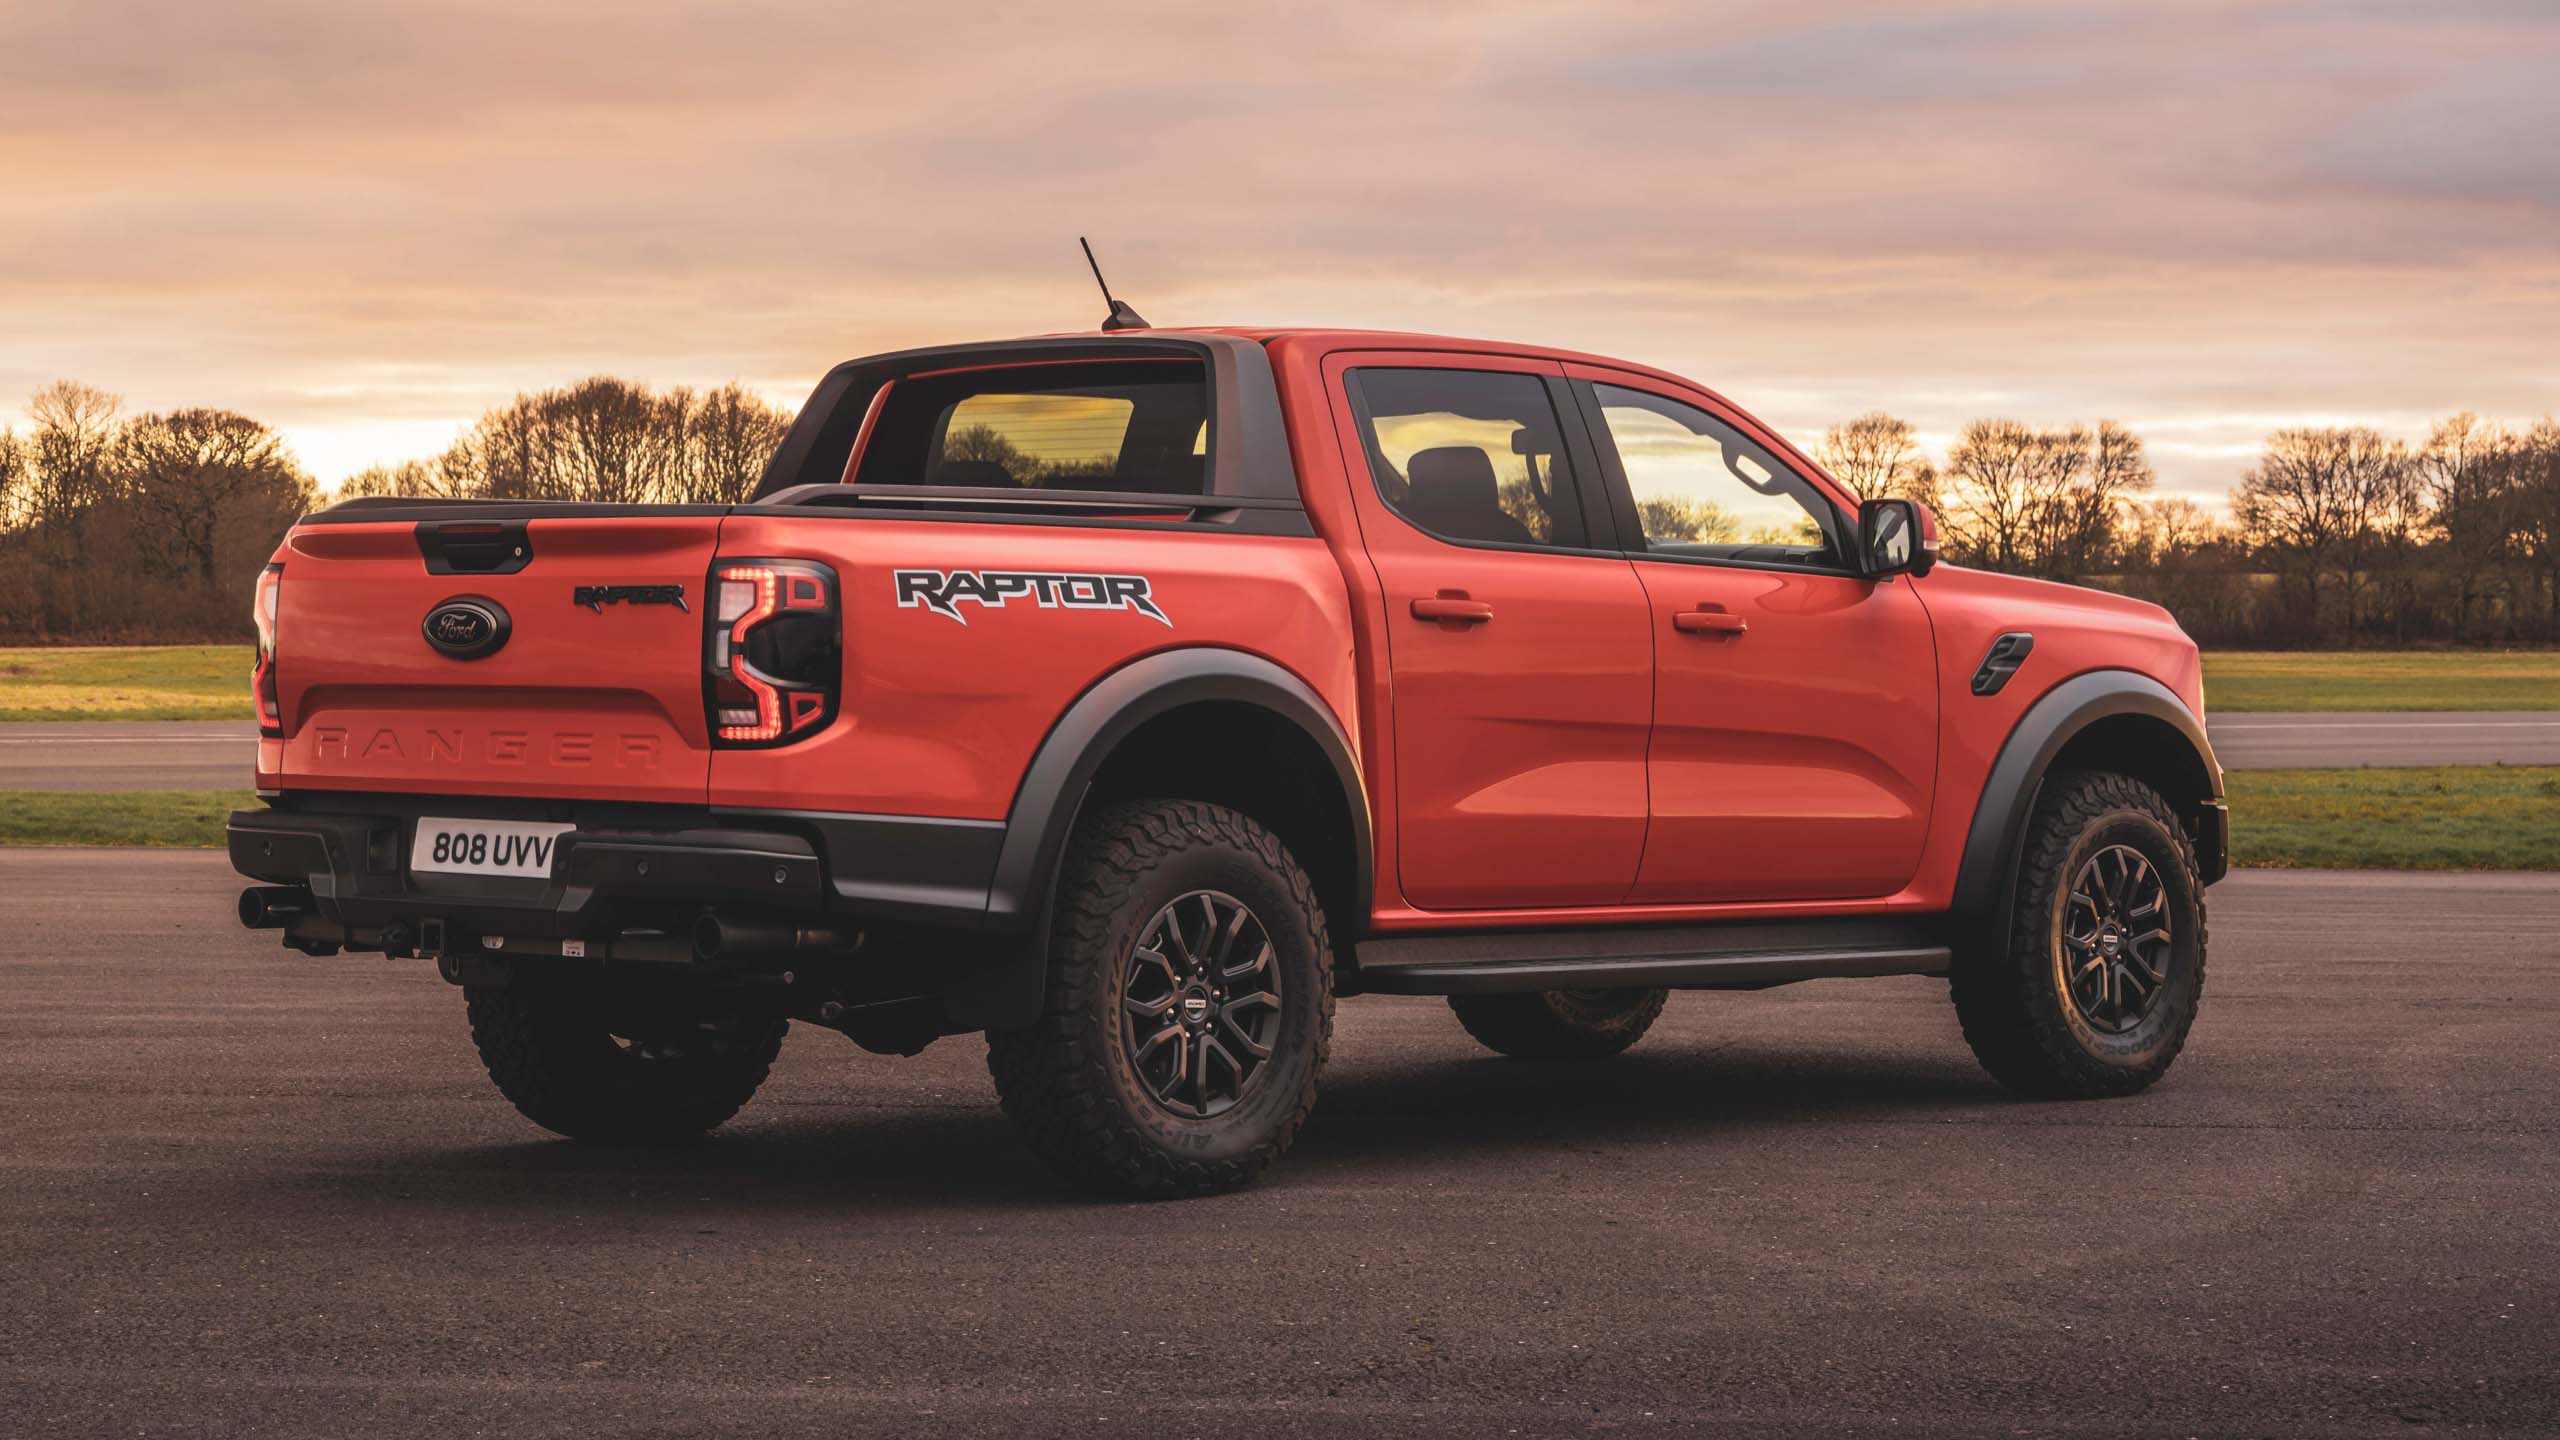 Ford Ranger Raptor 🔥 Así es la nueva generación 🔥 Prueba - Reseña (4K) 